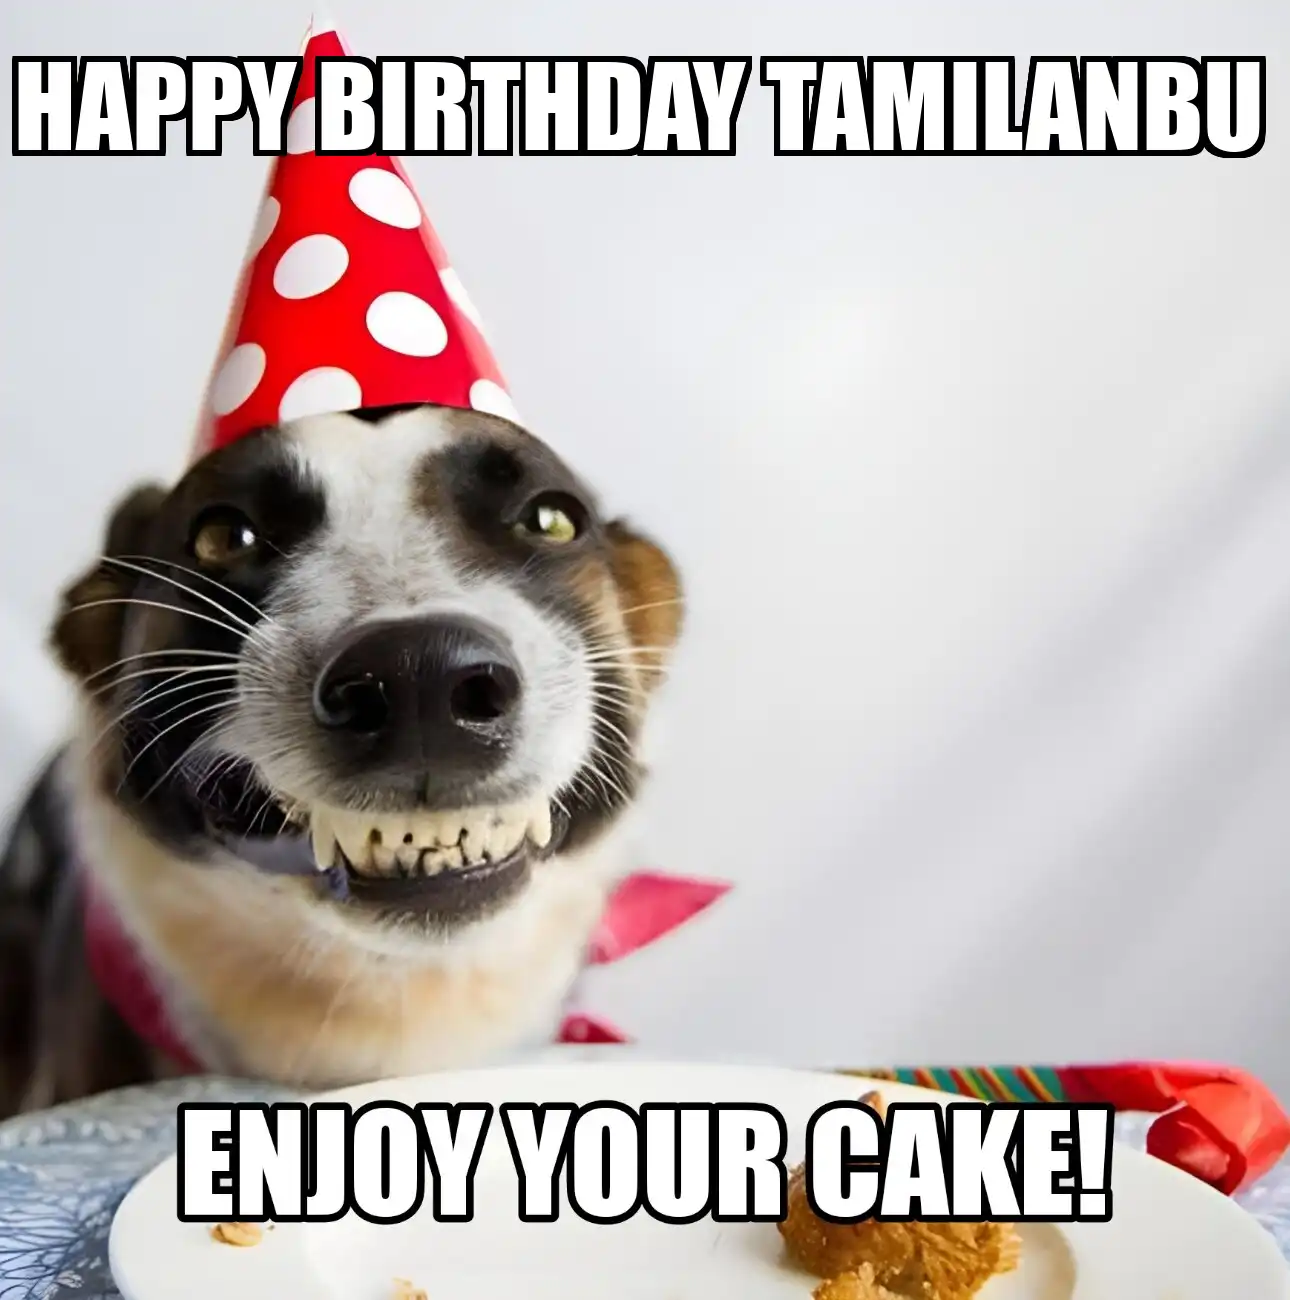 Happy Birthday Tamilanbu Enjoy Your Cake Dog Meme